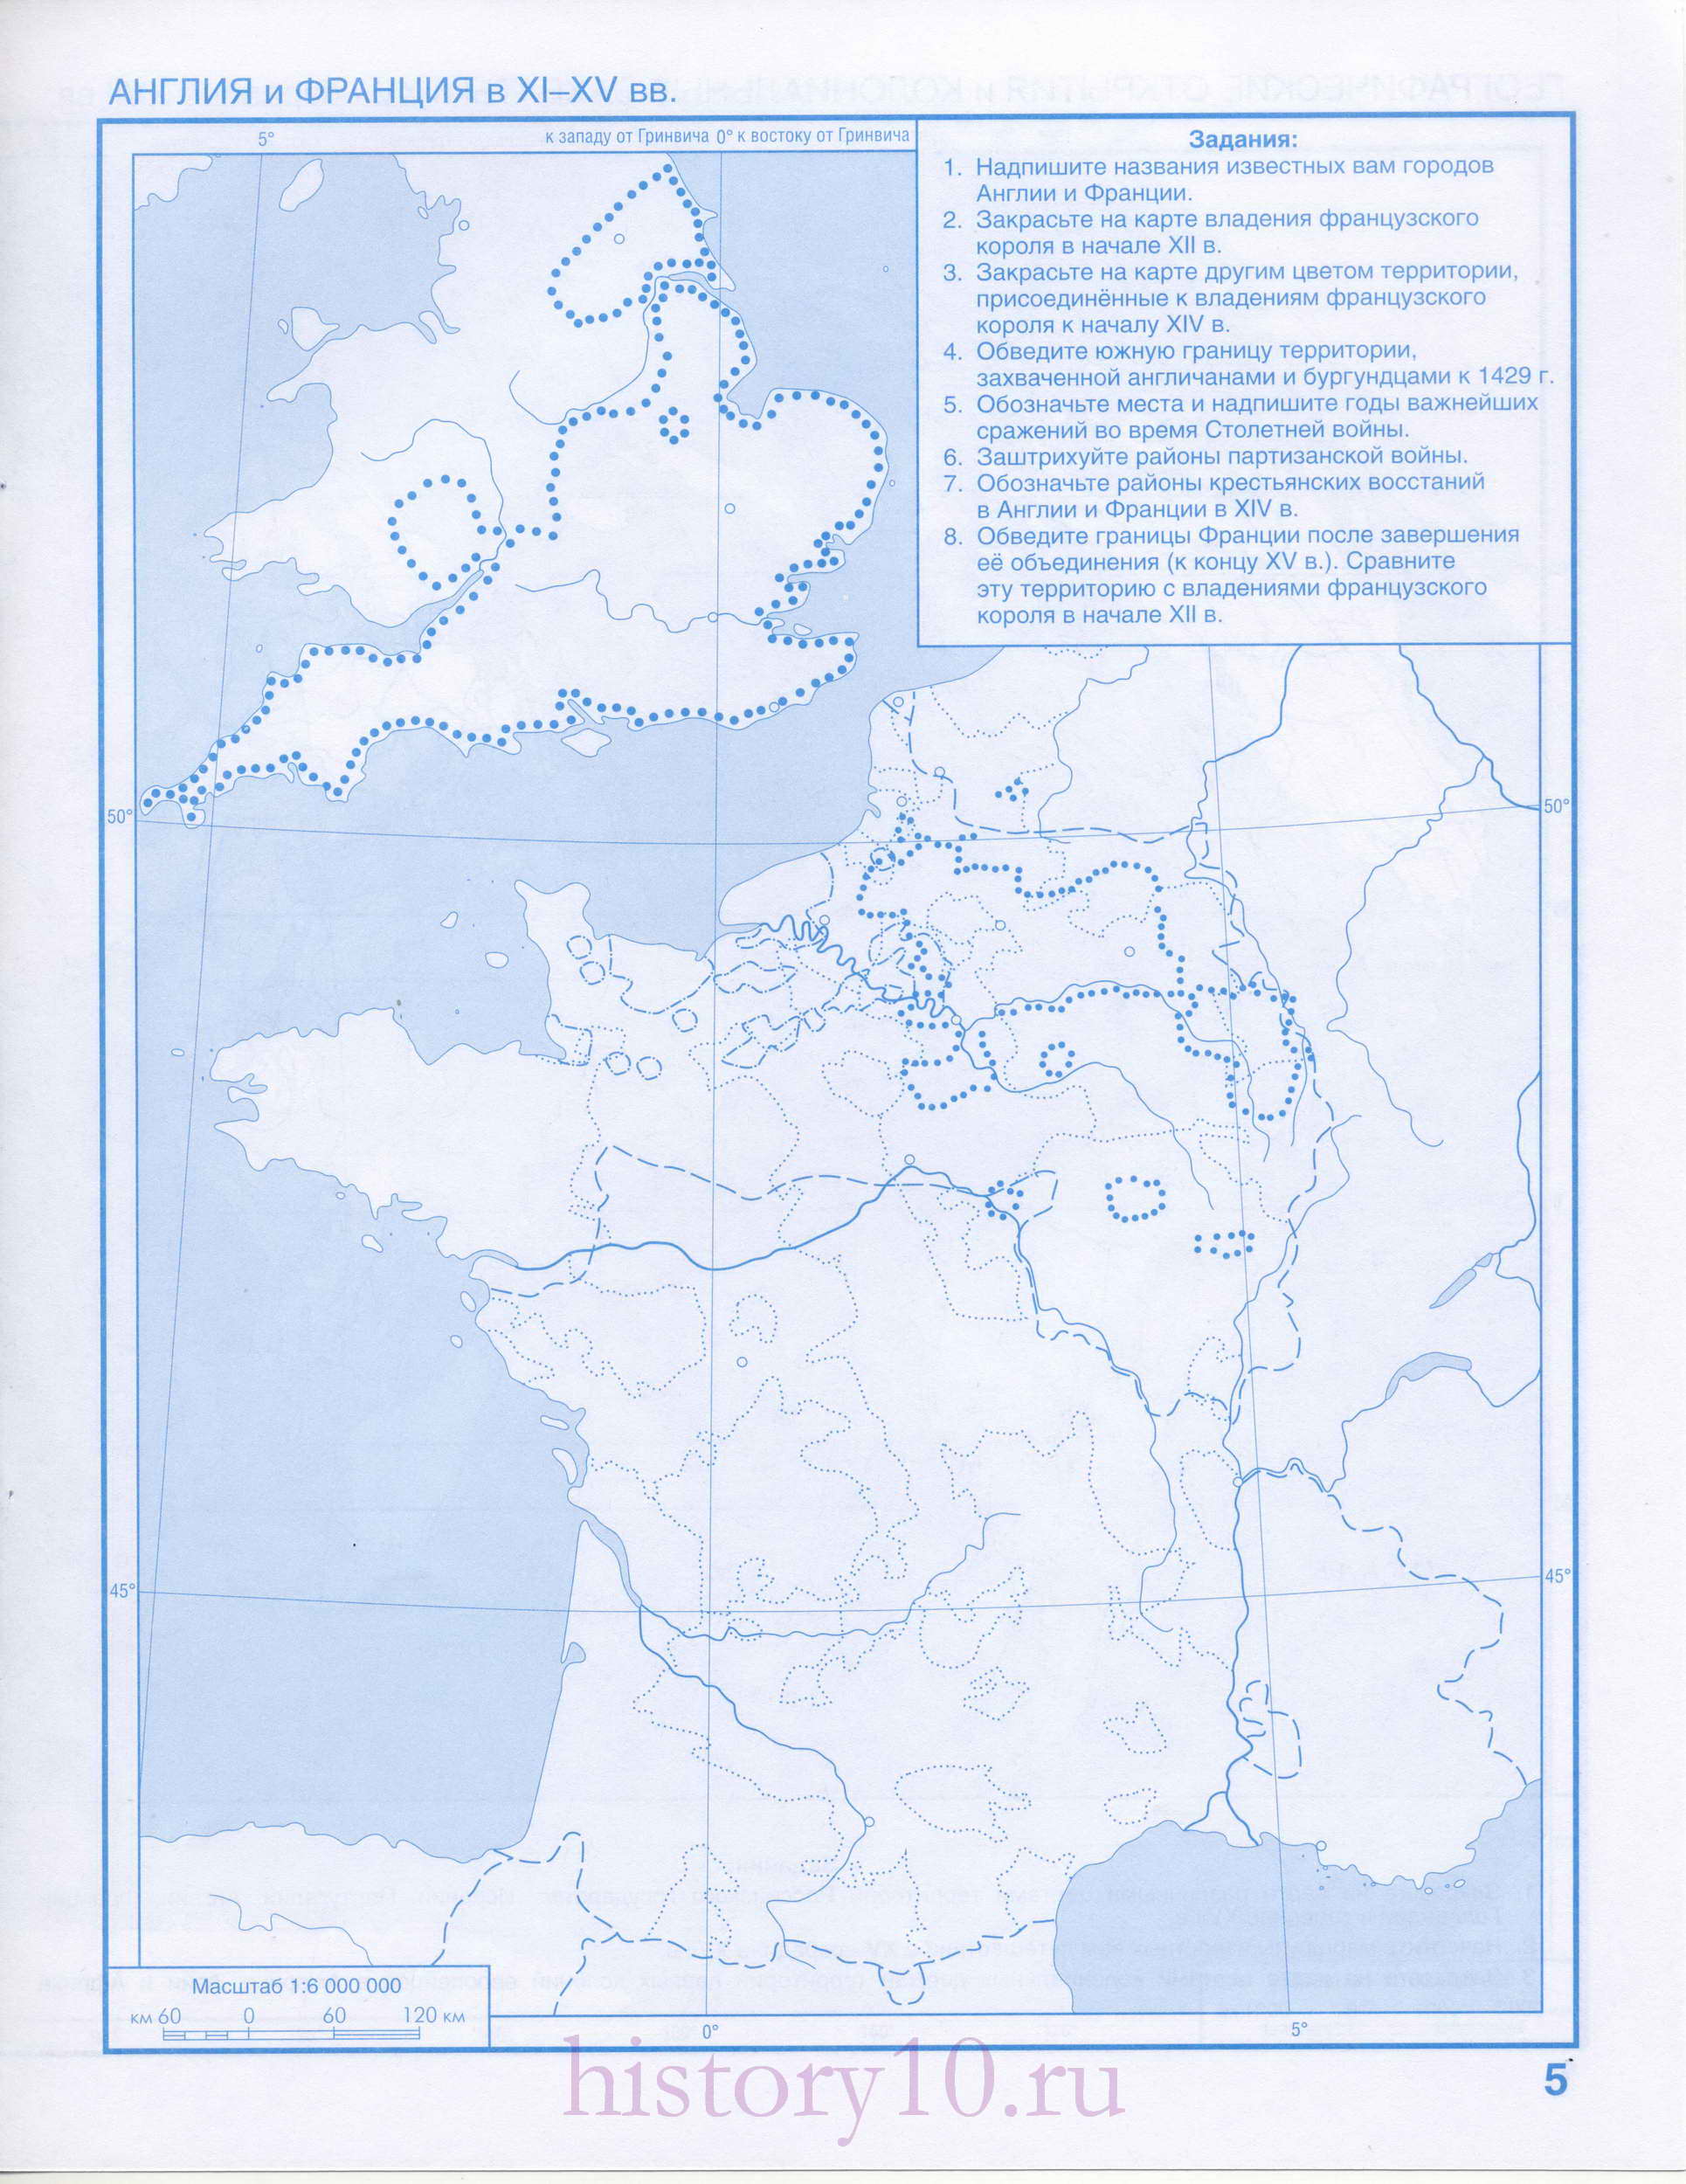 Англия и Франция в 11-15 веках. Контурная карта по истории средневековья - Англия и Франция, A0 - 